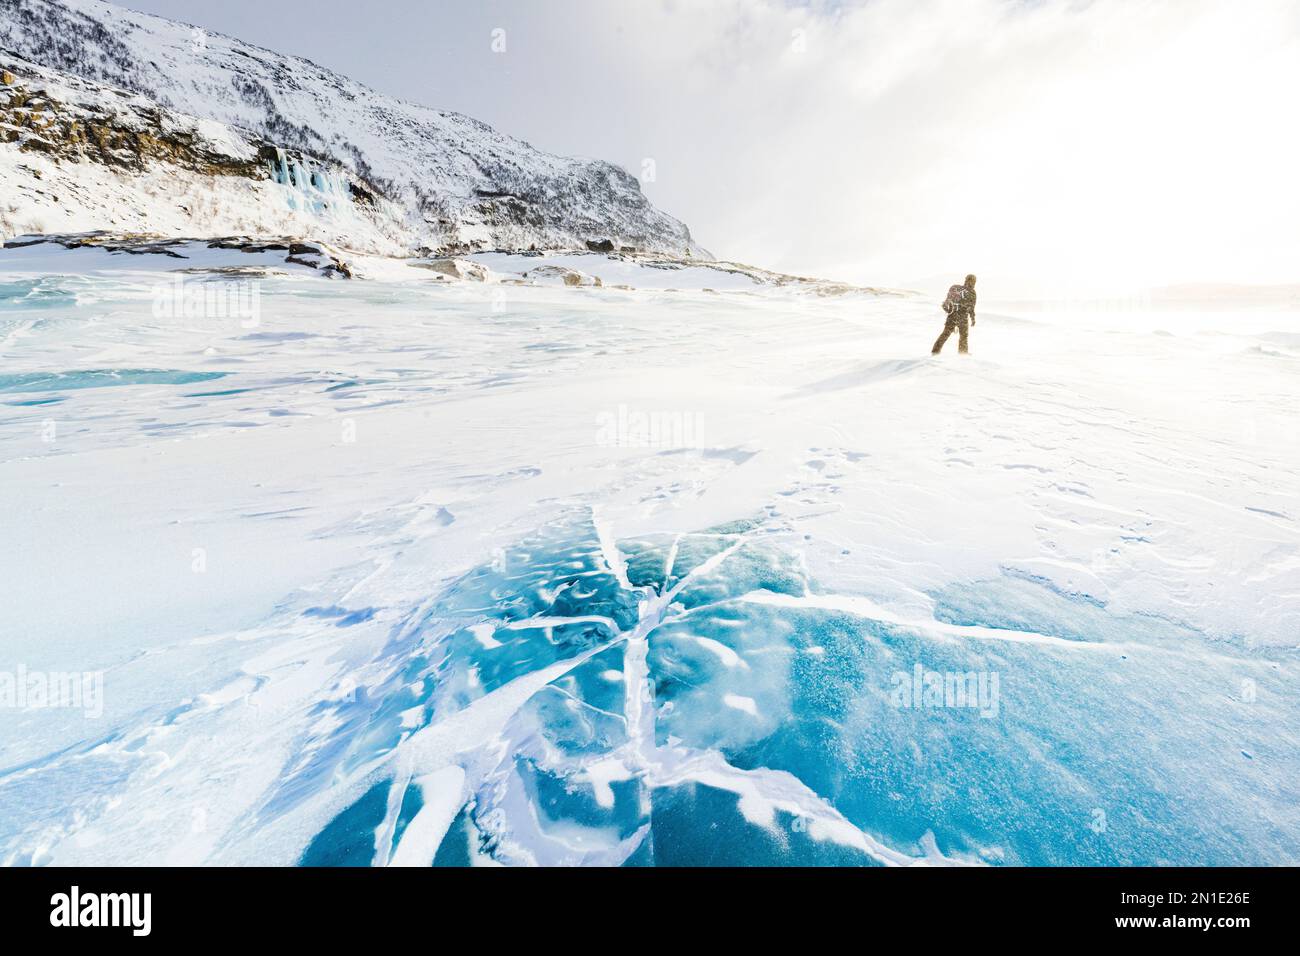 Escursionista esplorando il paesaggio innevato camminando sul lago ghiacciato in inverno, Stora Sjofallet, Norrbotten County, Lapponia, Svezia, Scandinavia, Europa Foto Stock